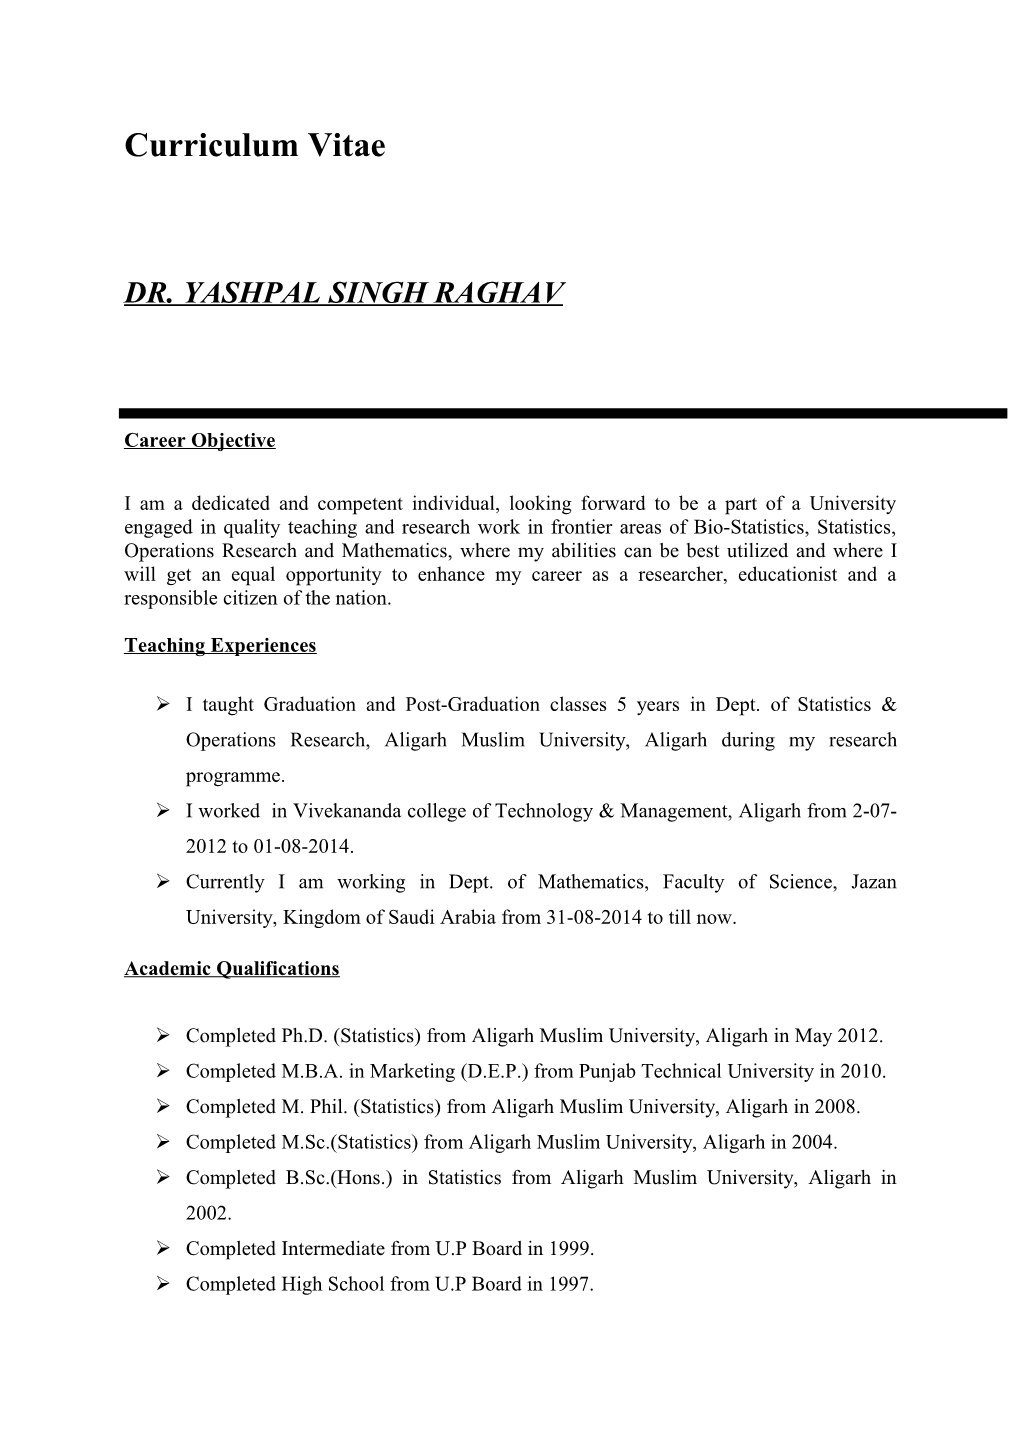 Dr. Yashpal Singh Raghav